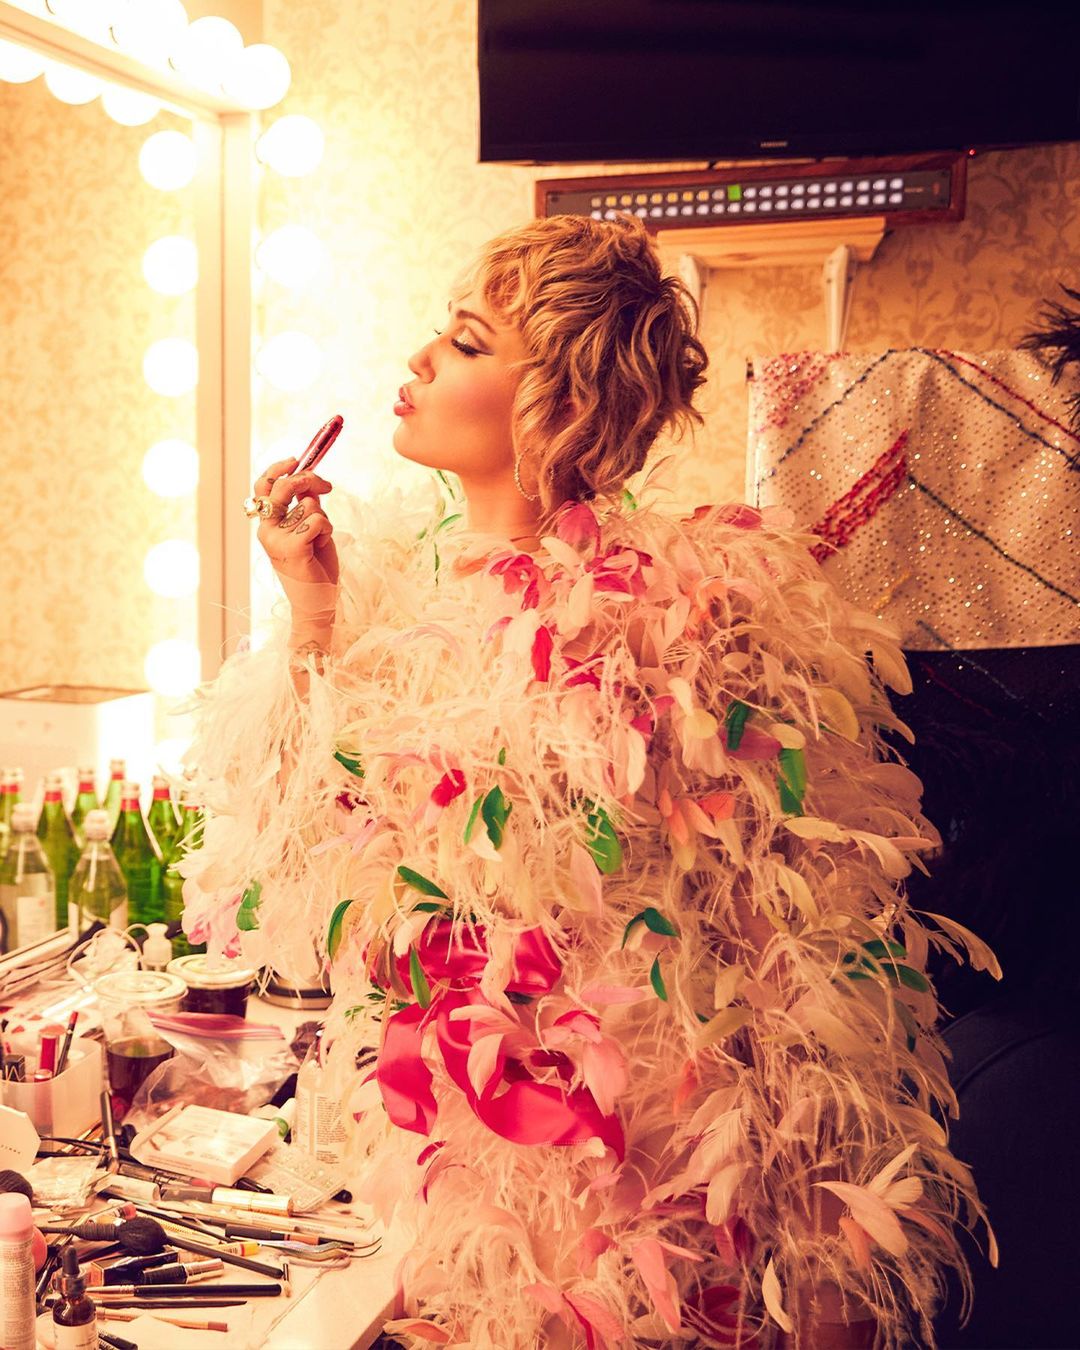 FOTOS Miley Cyrus lanzar un nuevo video este viernes! - Photo 56